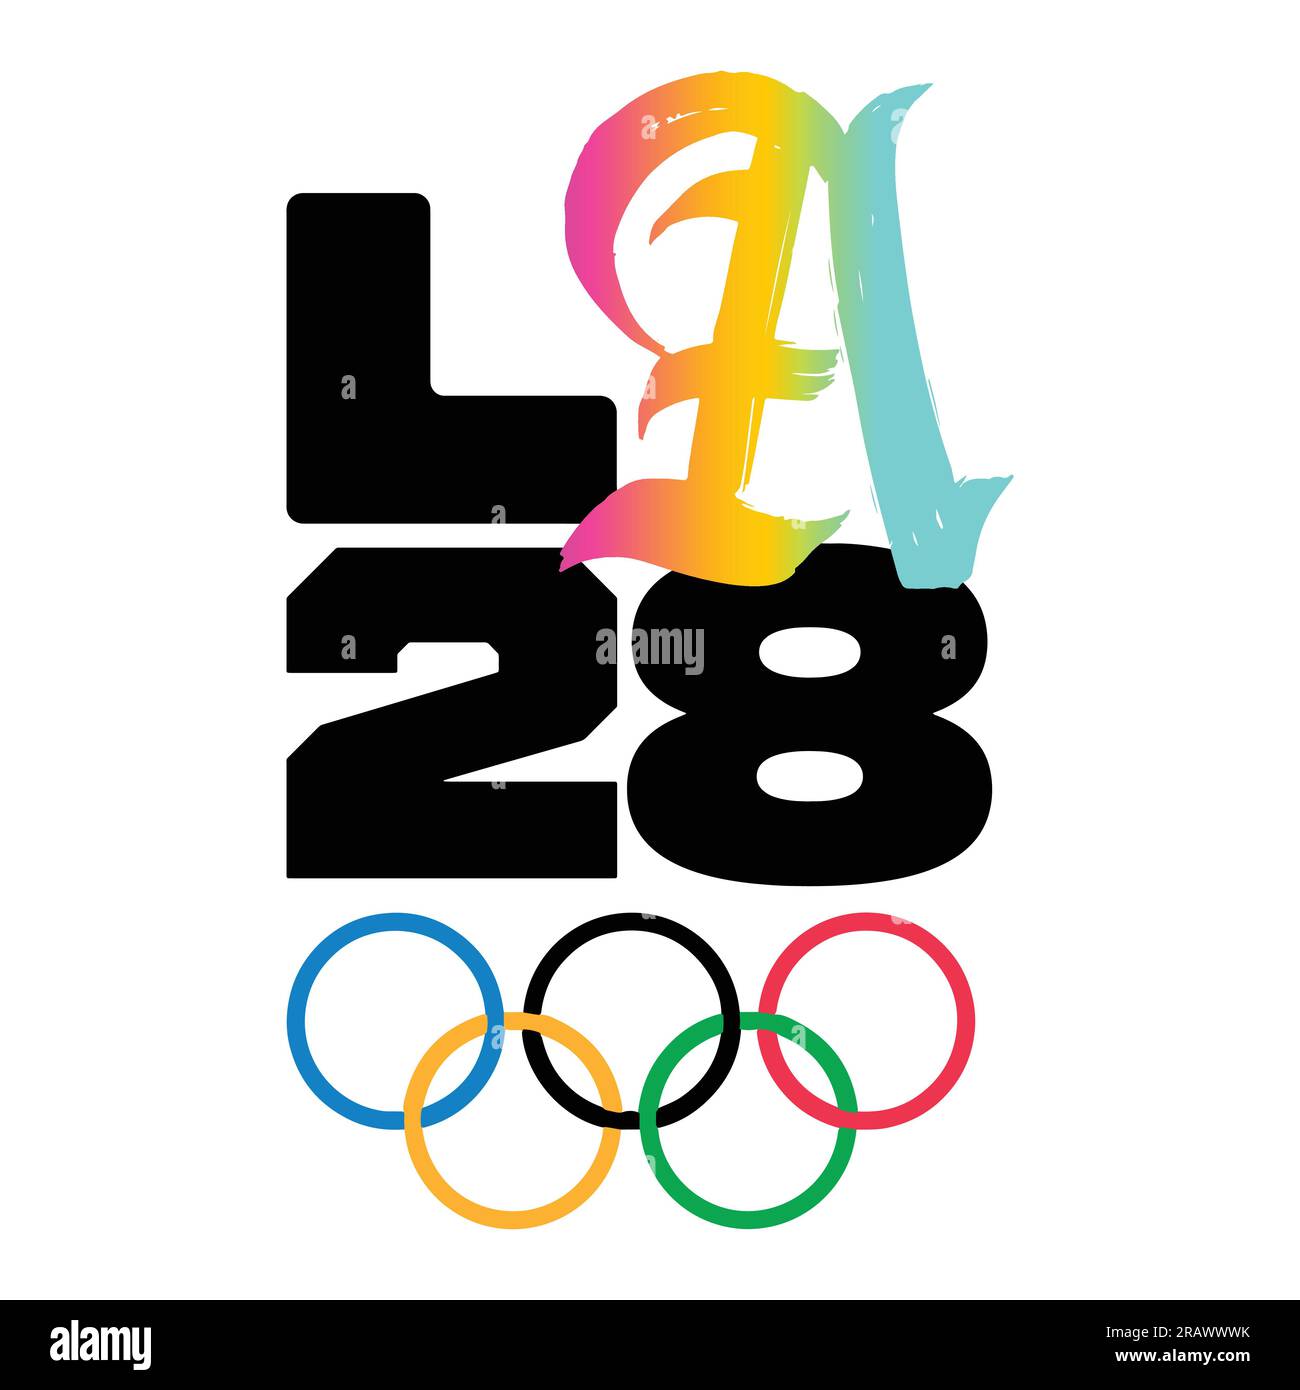 Los Ángeles 2028 colorido logotipo de los Juegos Olímpicos de verano 2028 en EE.UU. Y fondo blanco, ilustración vectorial Resumen imagen editable Ilustración del Vector